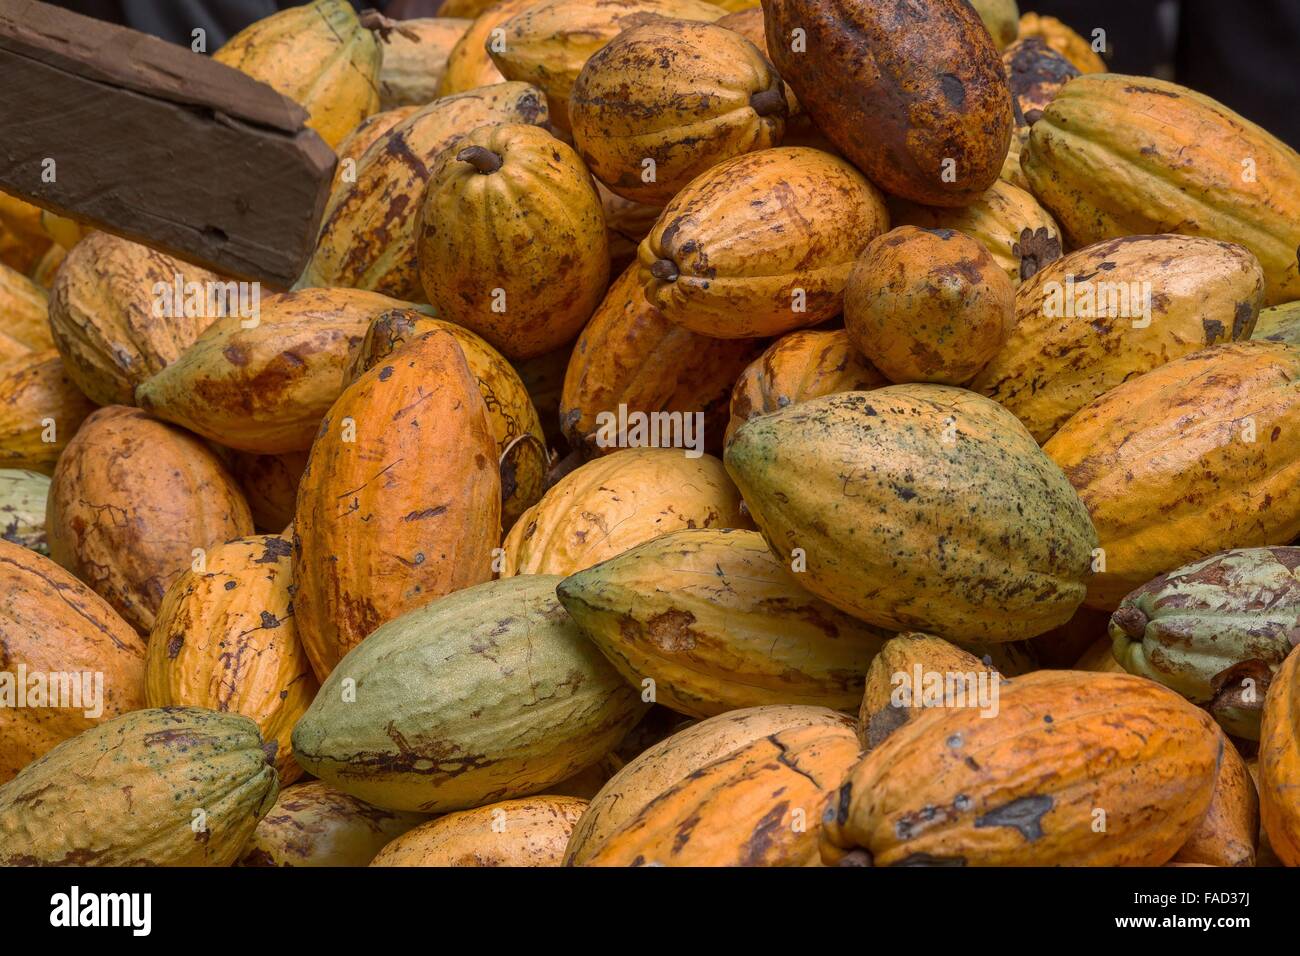 Une pile de cabosses mûres fraîchement récoltés de la WCF African Cocoa Initiative farm le 16 novembre 2015 au Ghana. Les cabosses de cacao fermentées et séchées sont en train de devenir la base de chocolat. Banque D'Images